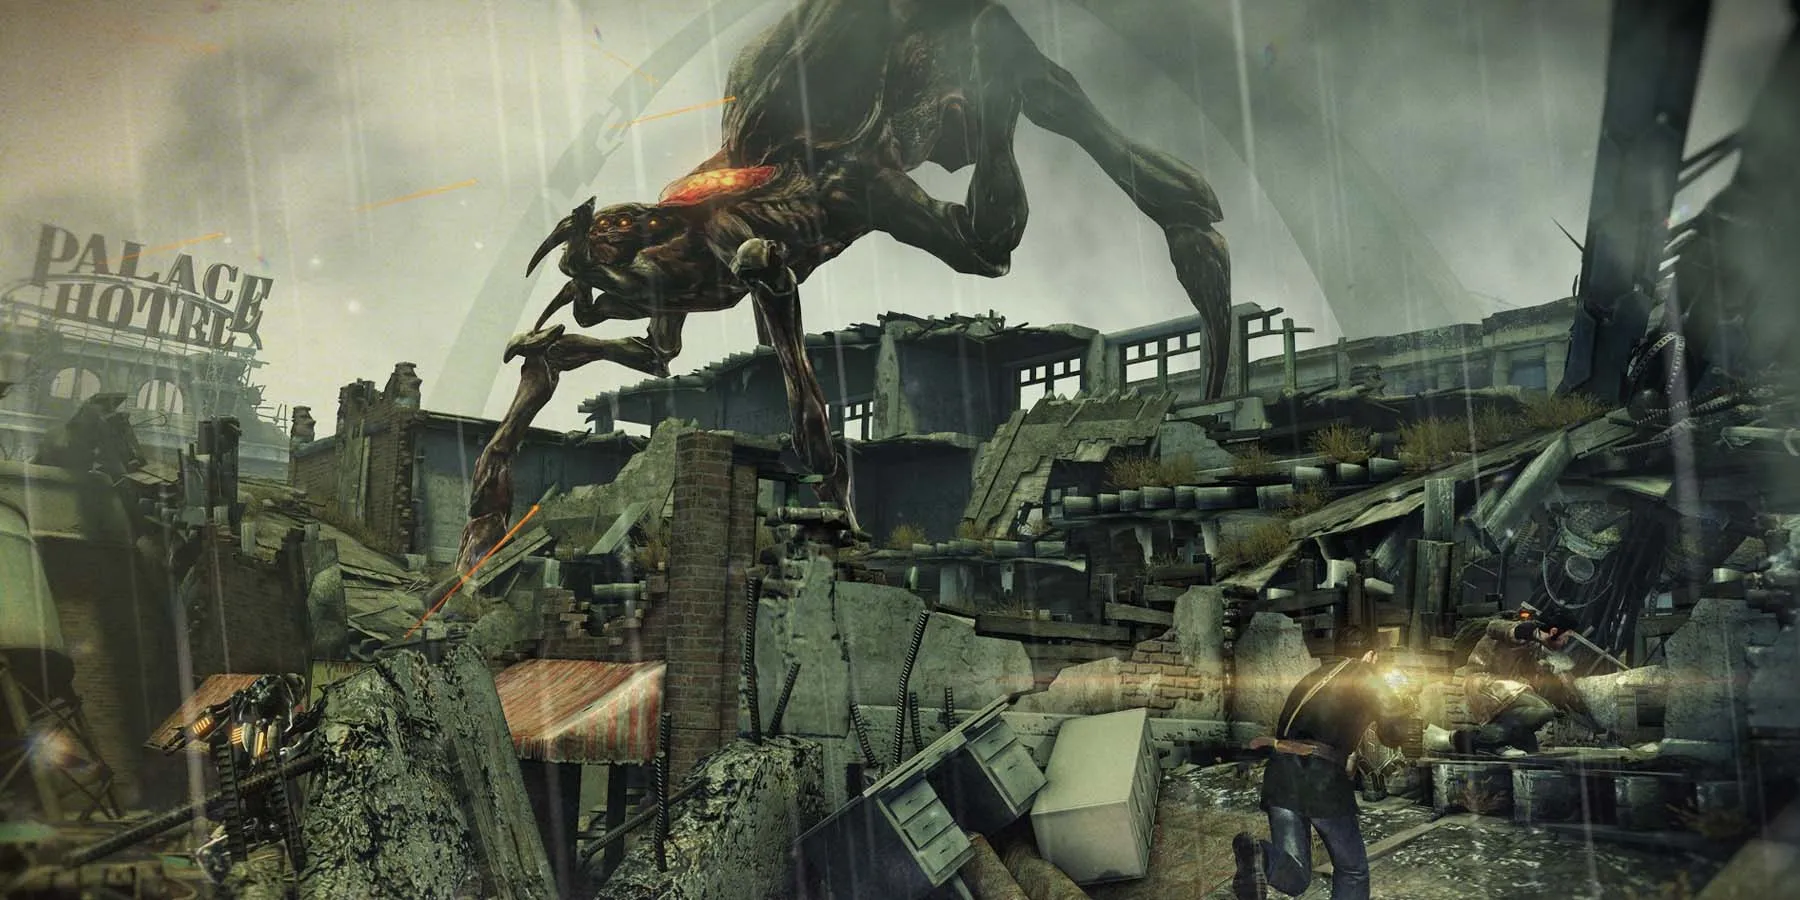 Une grande créature extraterrestre se faufile à travers une ville détruite sous la pluie